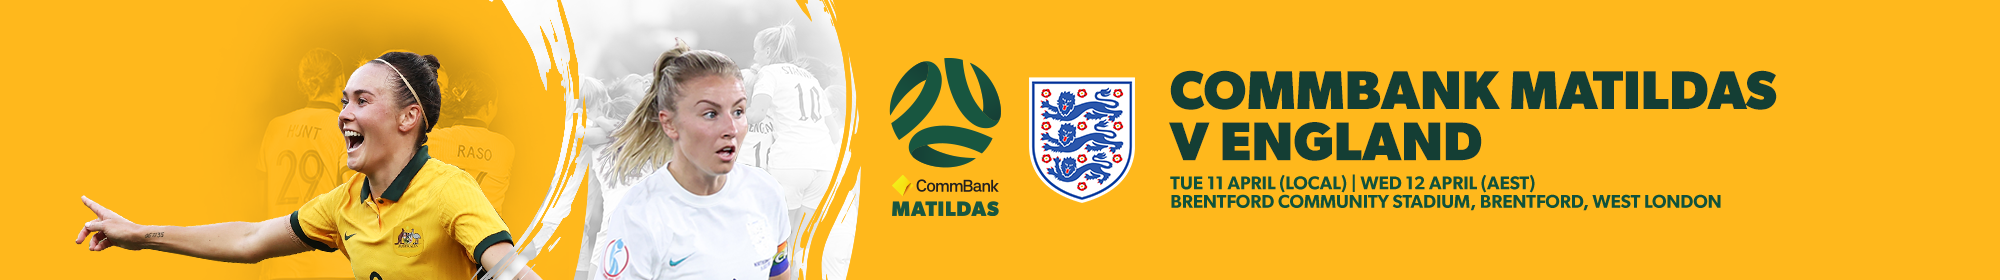 VEA: Ganadores de la Copa de Naciones CommBank Matildas